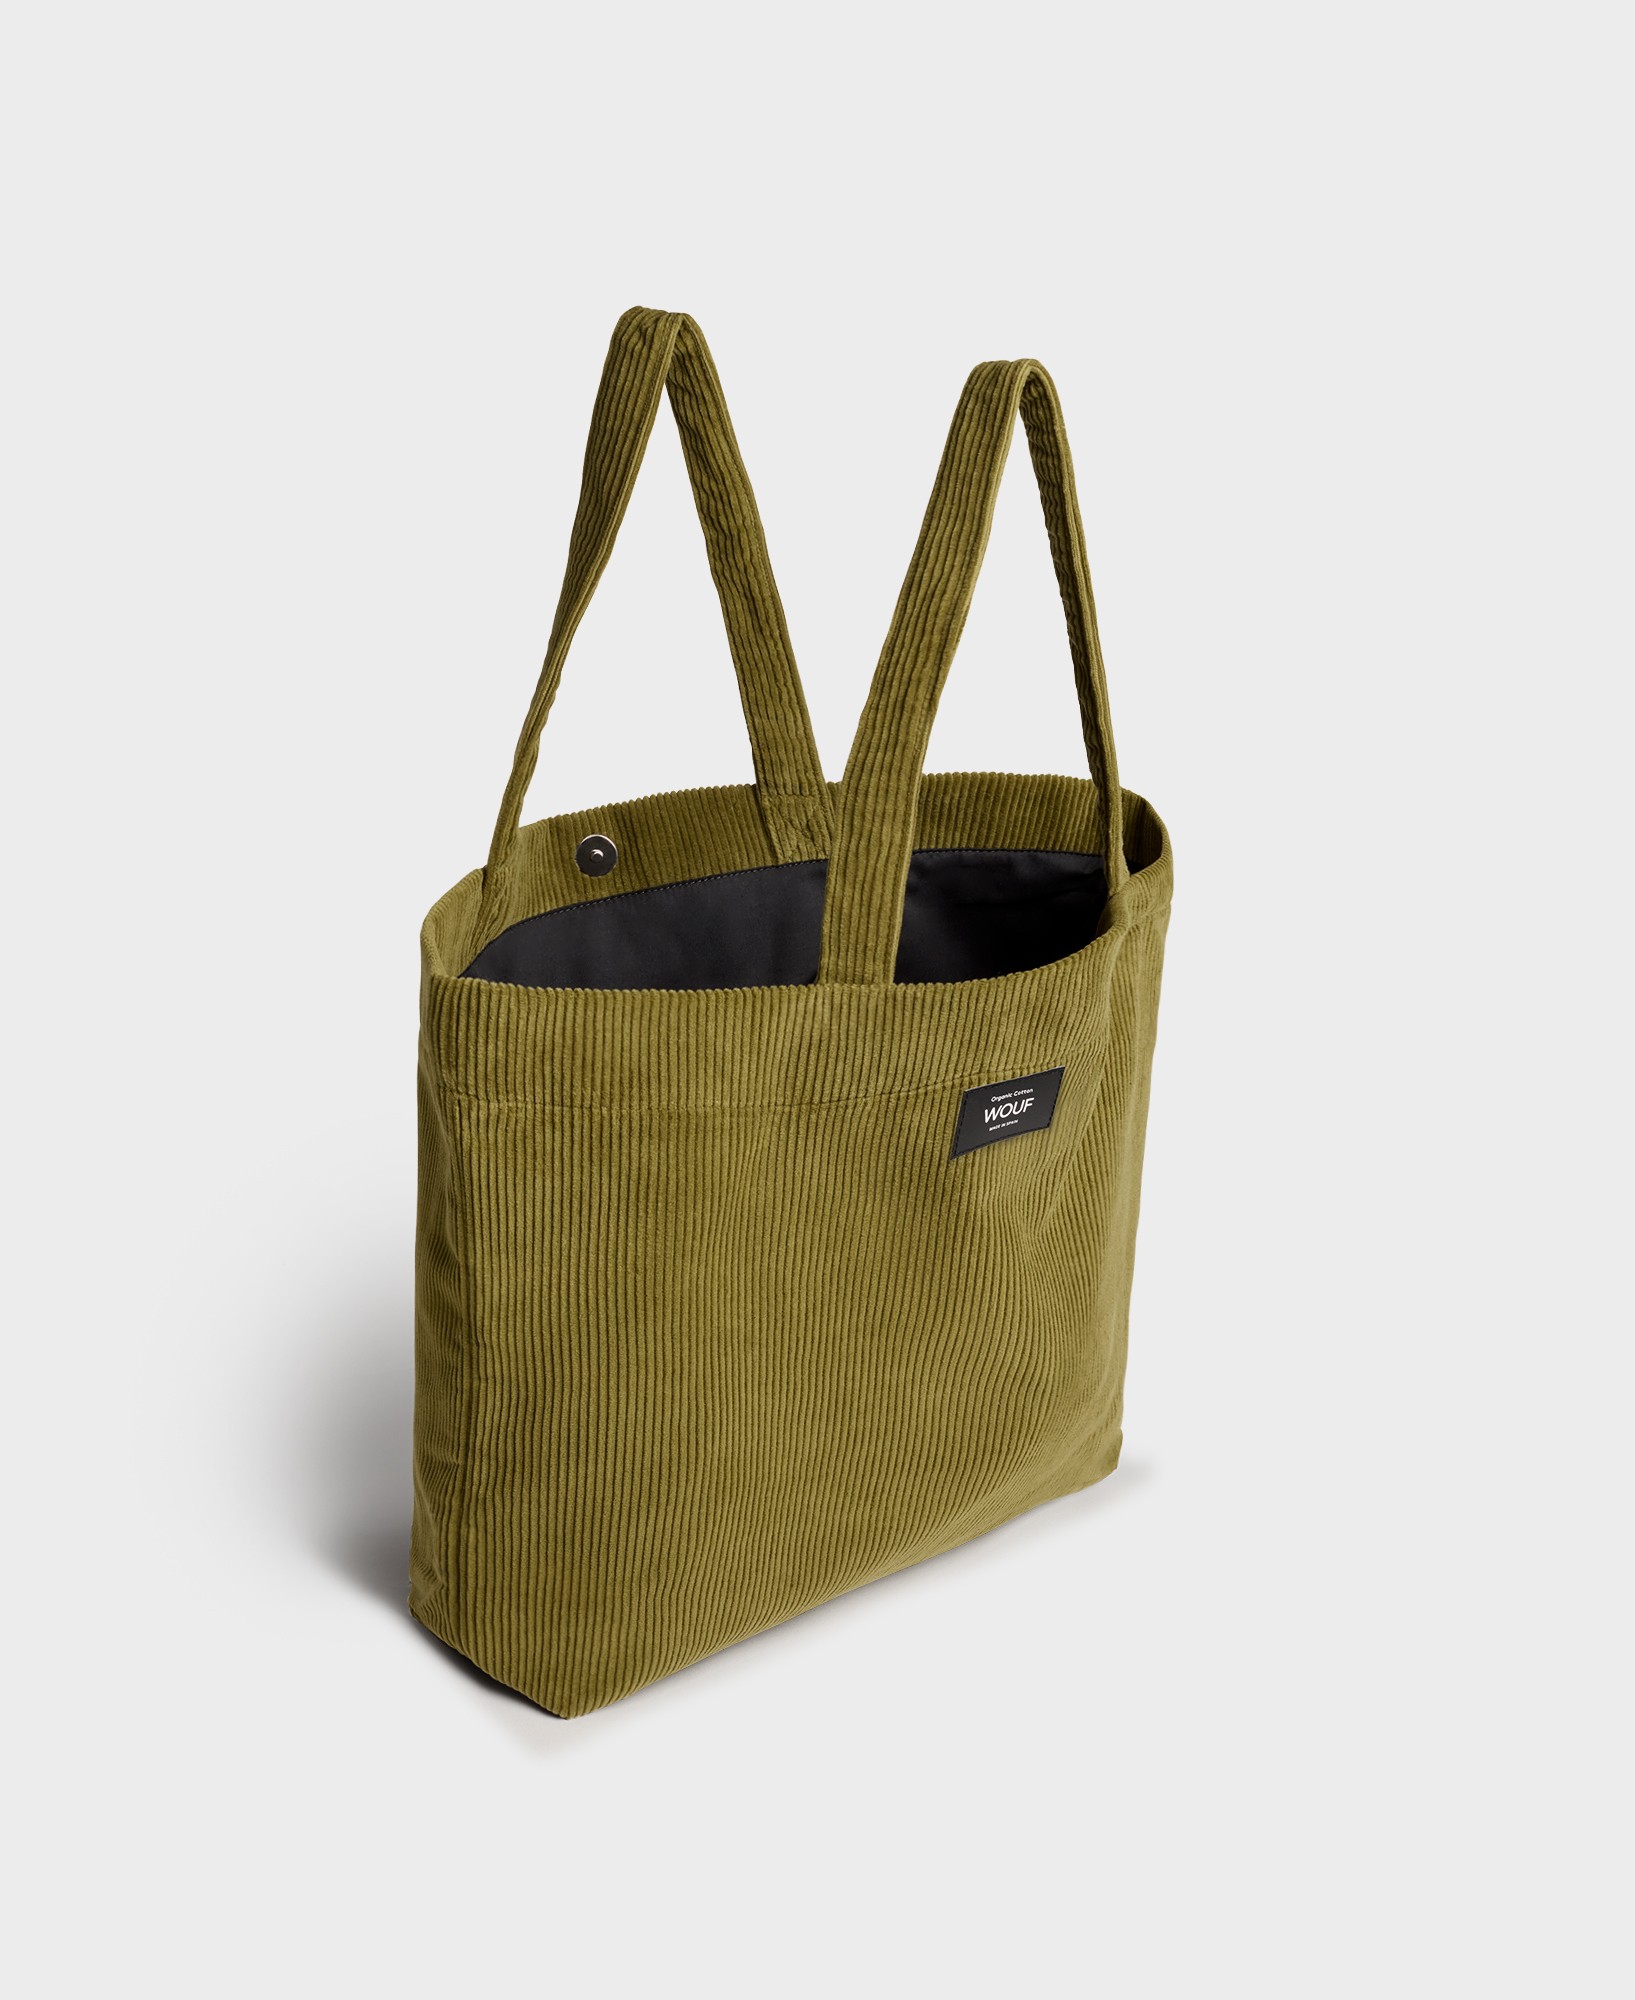 Olive Tote bag